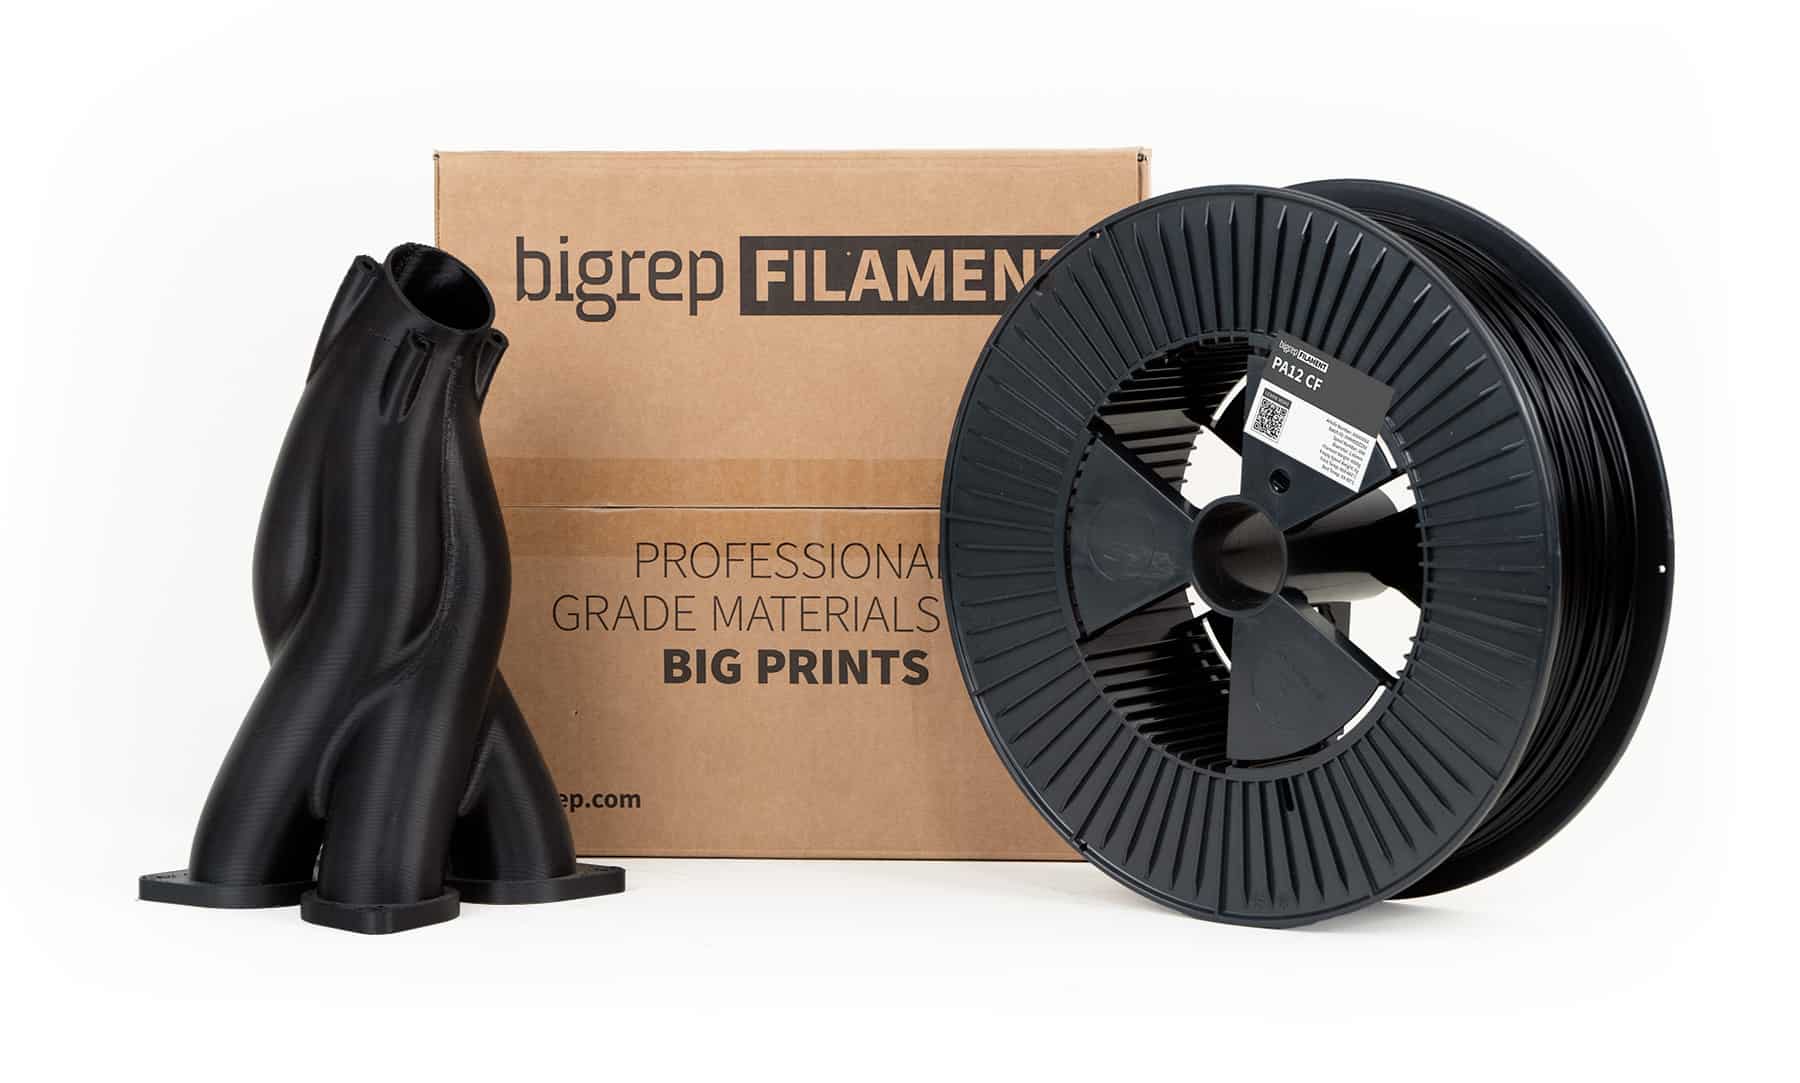 BigRep PA12 CF filament spool and sample print